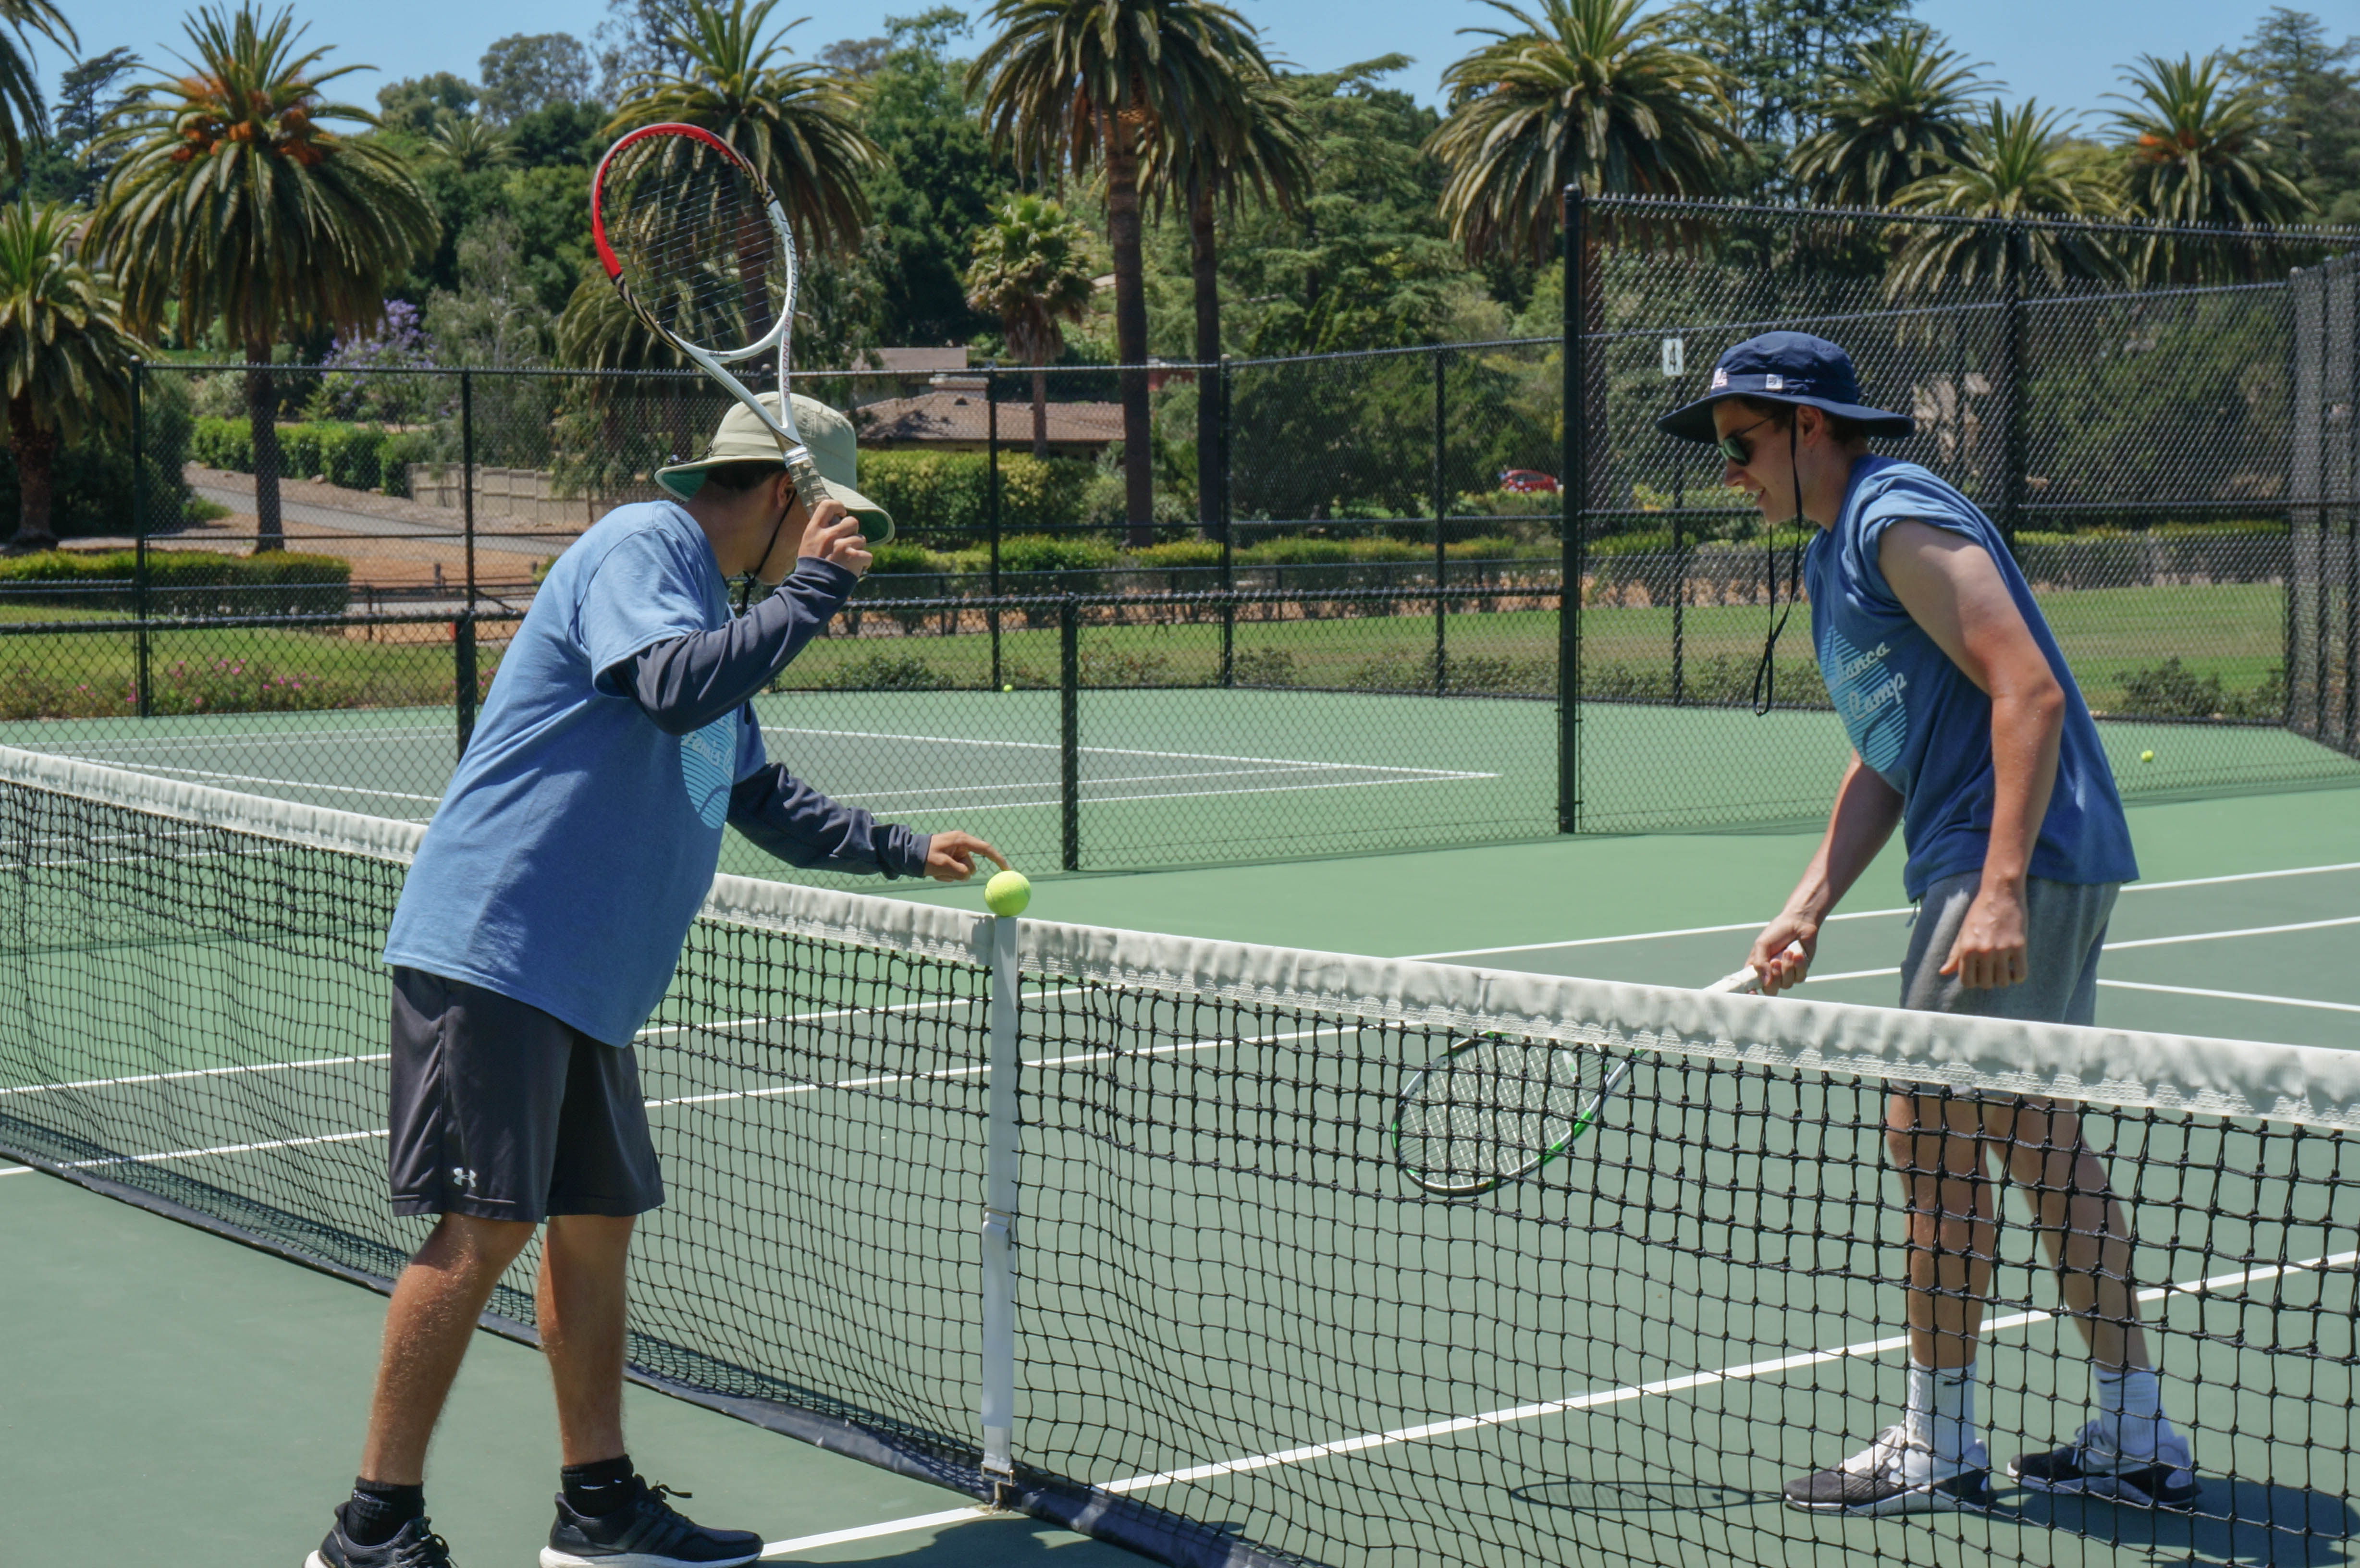 Coaches Mini-Tennis